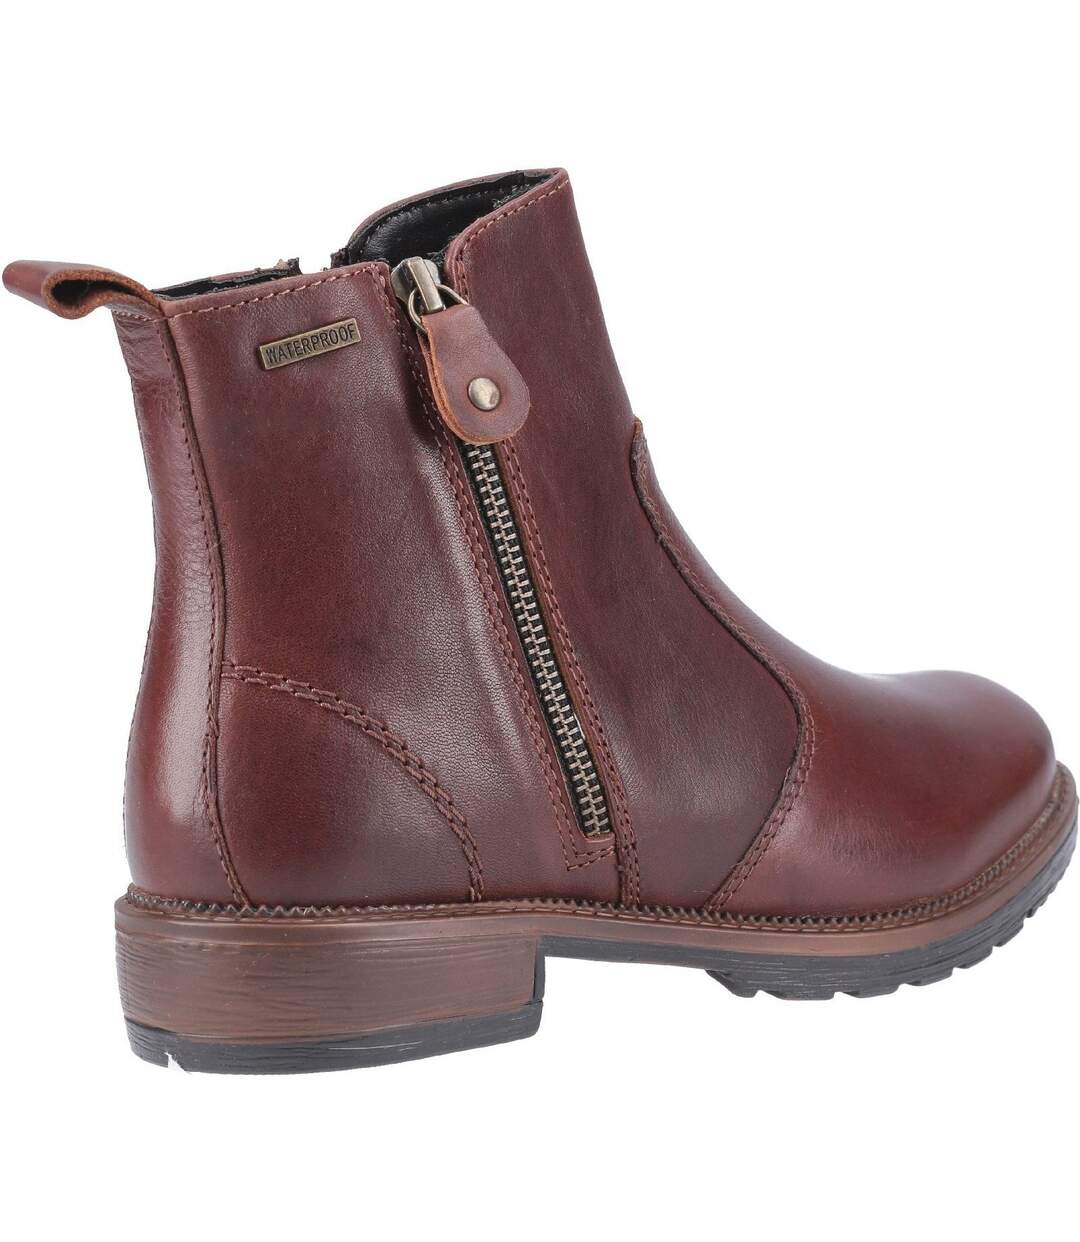 Cotswold Womens/Ladies Ashwicke Zip Leather Ankle Boot (Brown) - UTFS6652